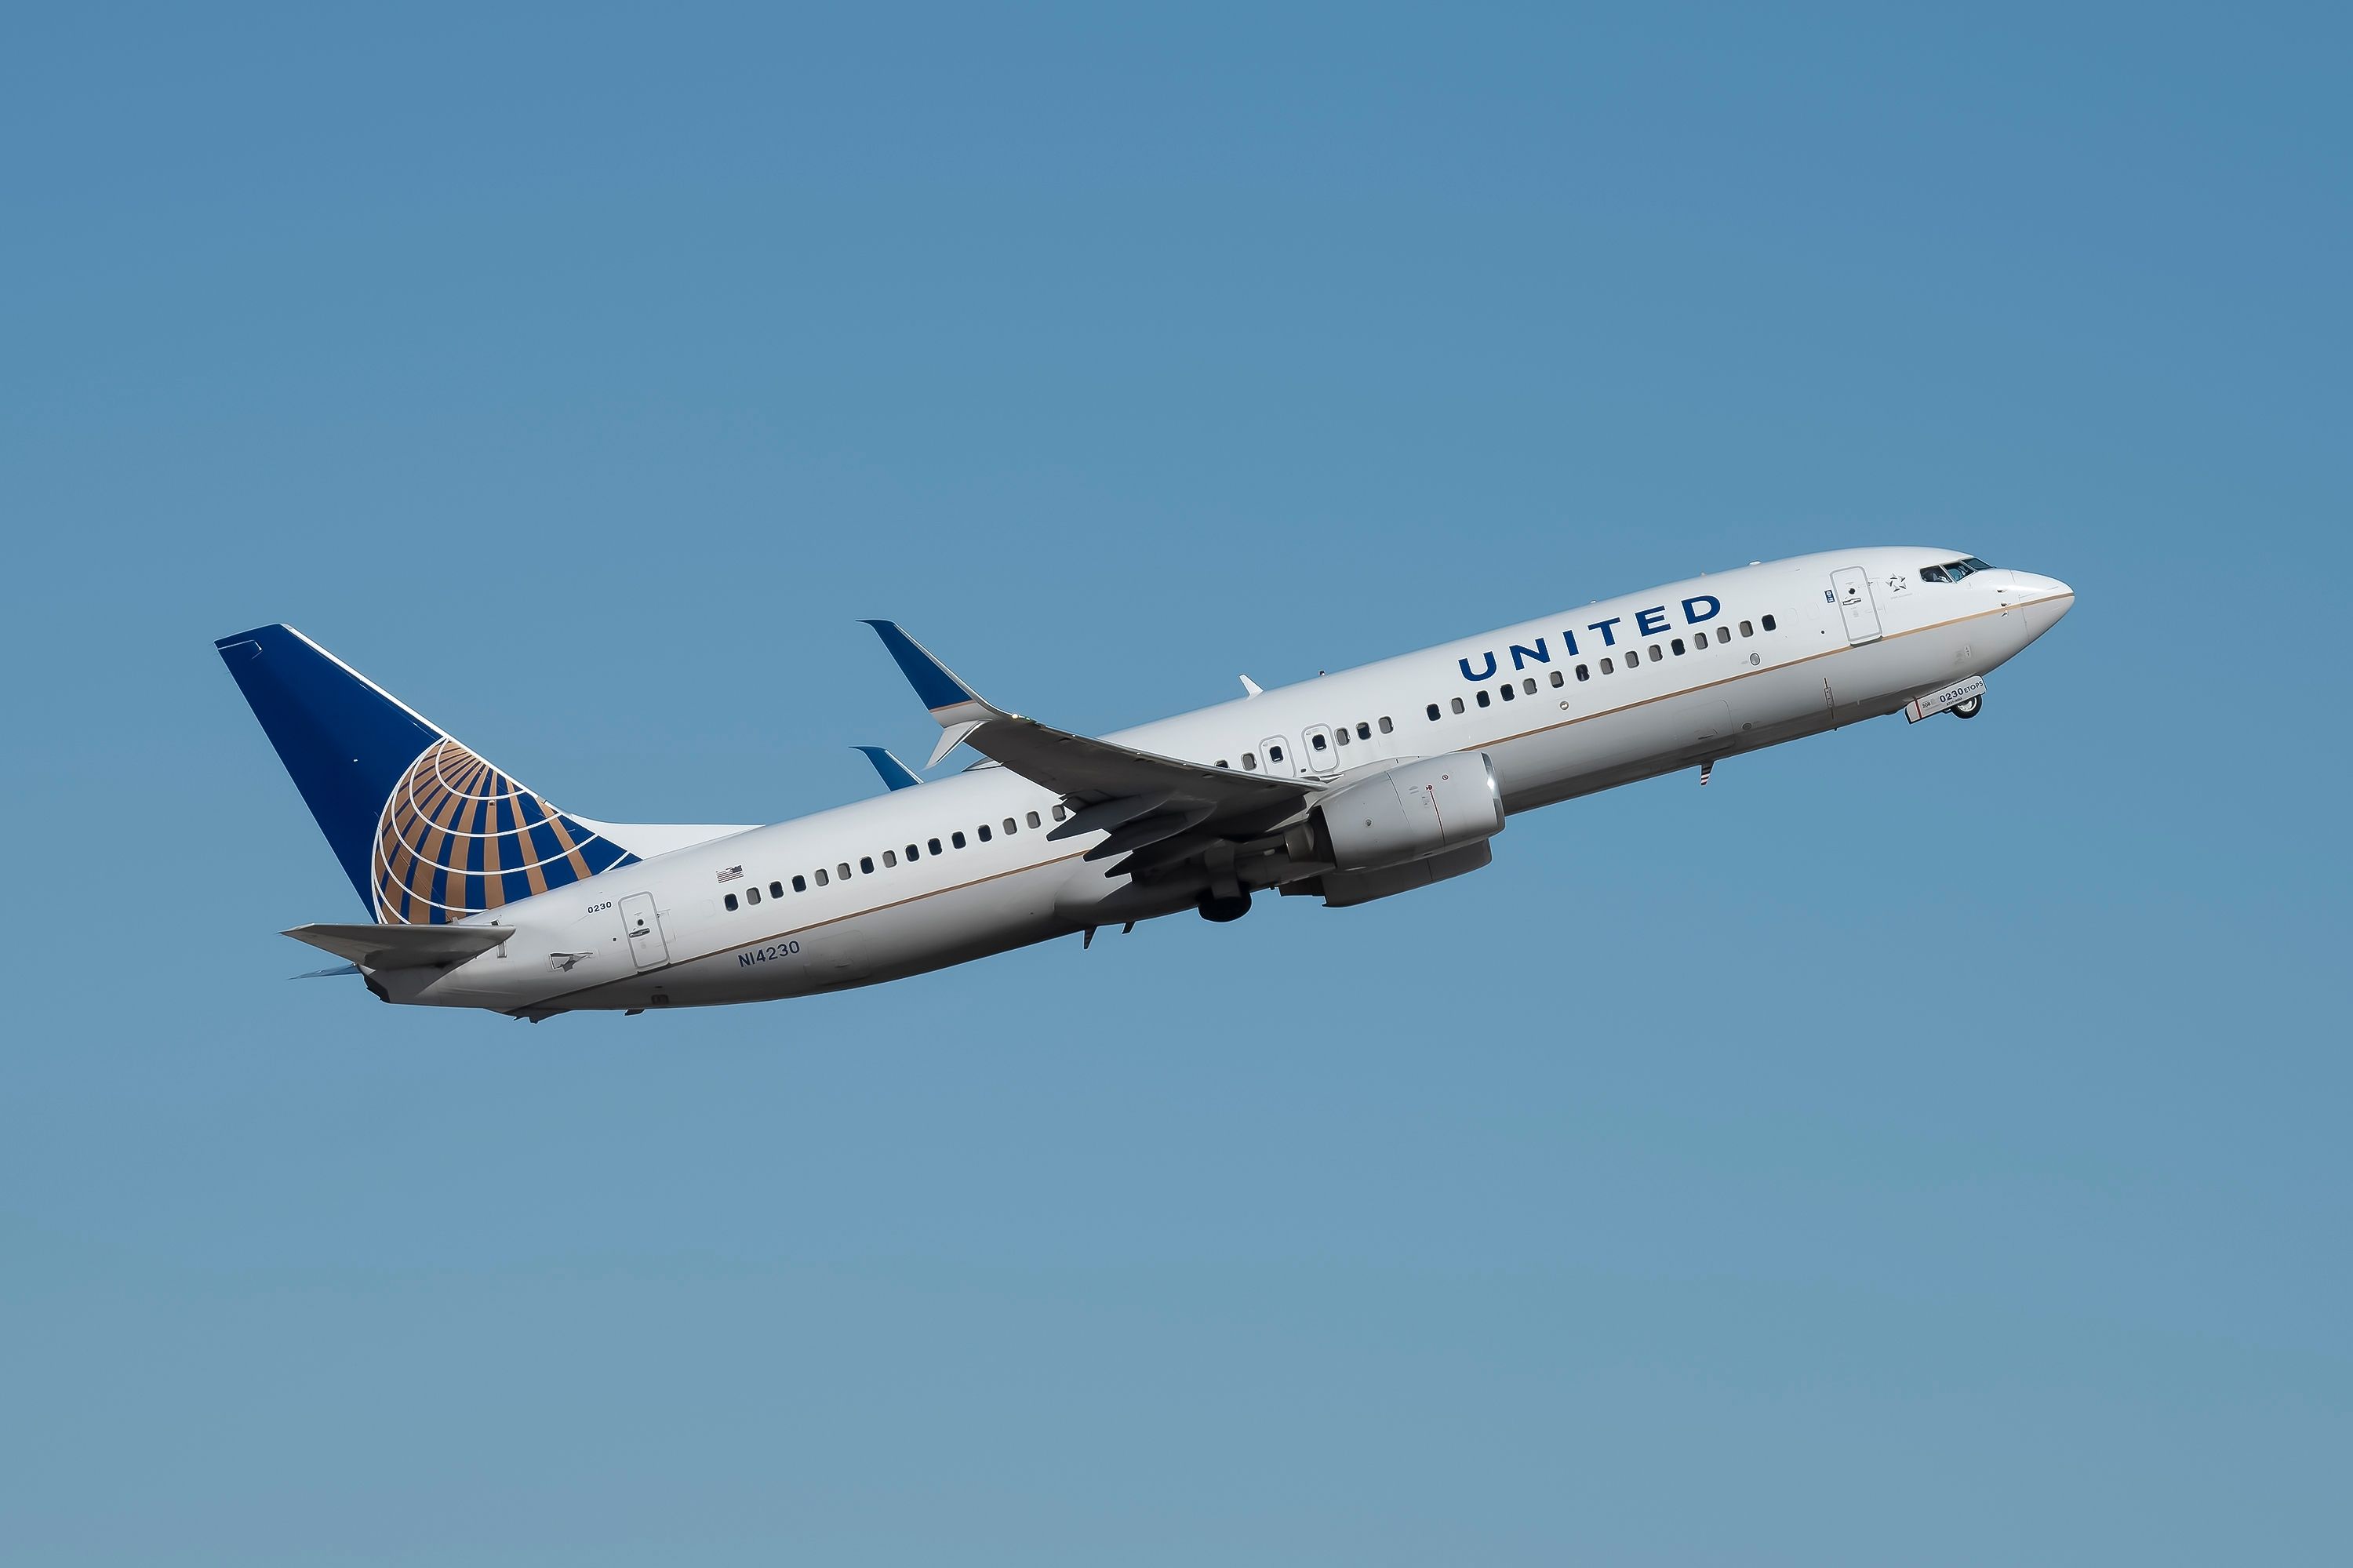 United Airlines Boeing 737-824 N14230 departing from Phoenix Sky Harbor International Airport.